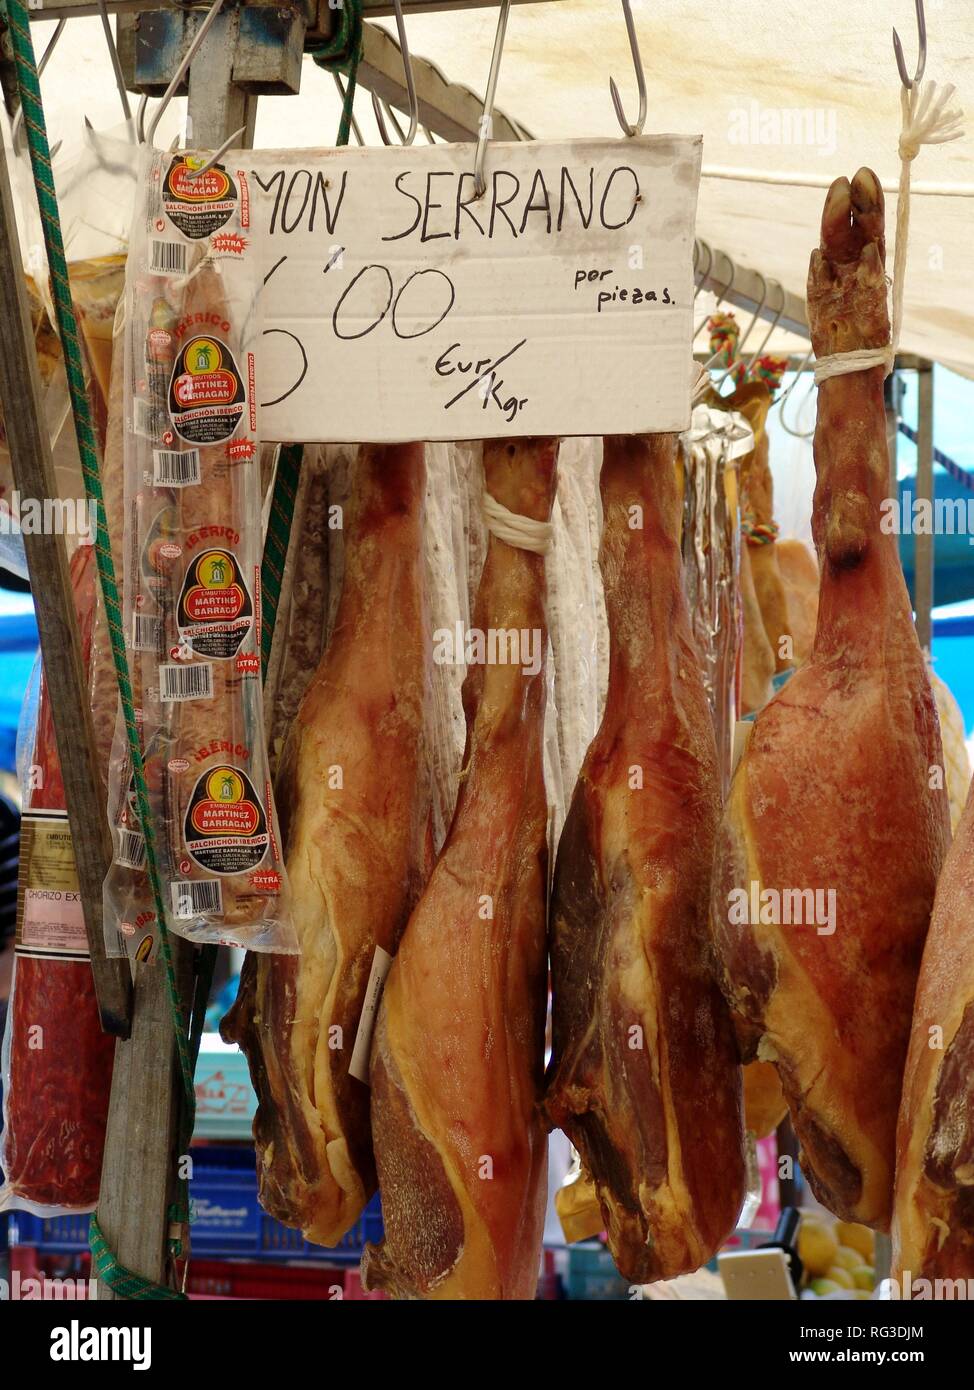 ESP, Isole Baleari Spagna, Mallorca, Aalcudia : mercato settimanale nella città vecchia. Prosciutto Serano. Foto Stock